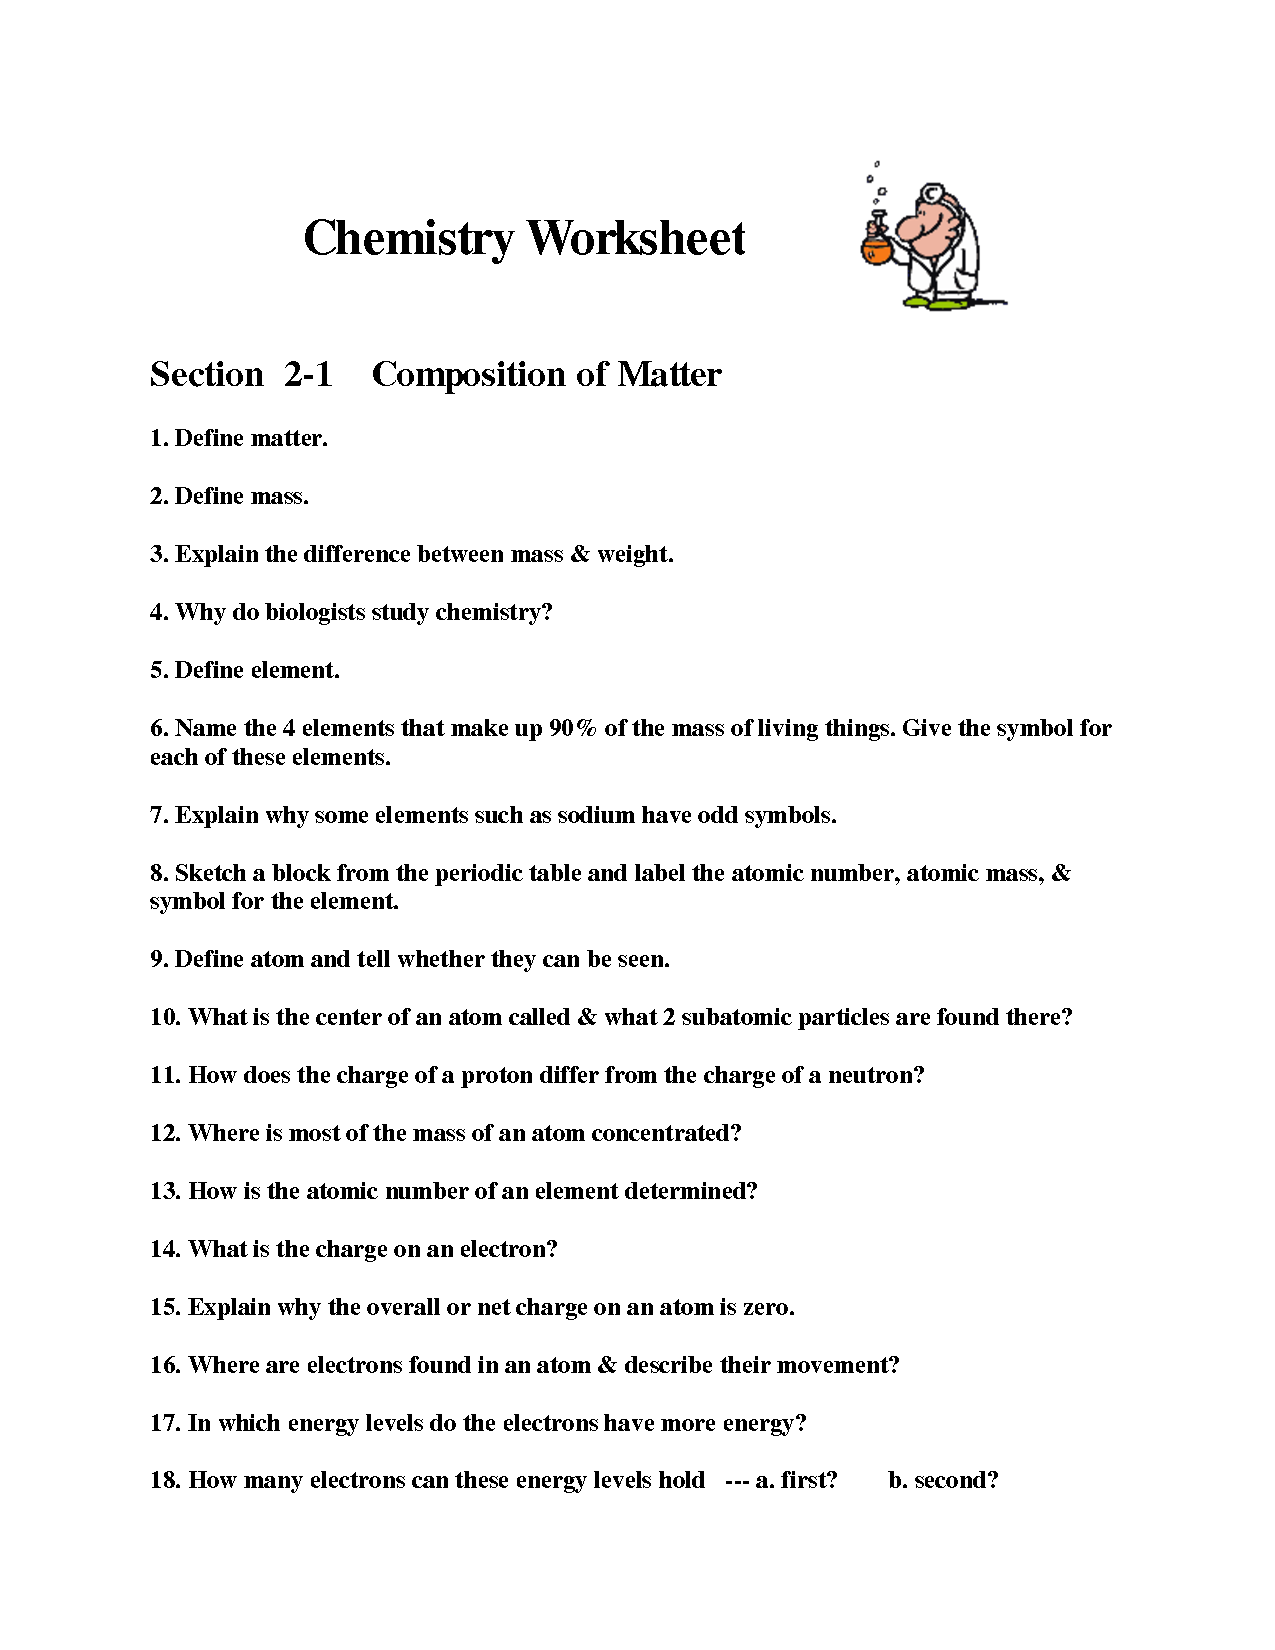 Chemistry Worksheet Matter 1 Image